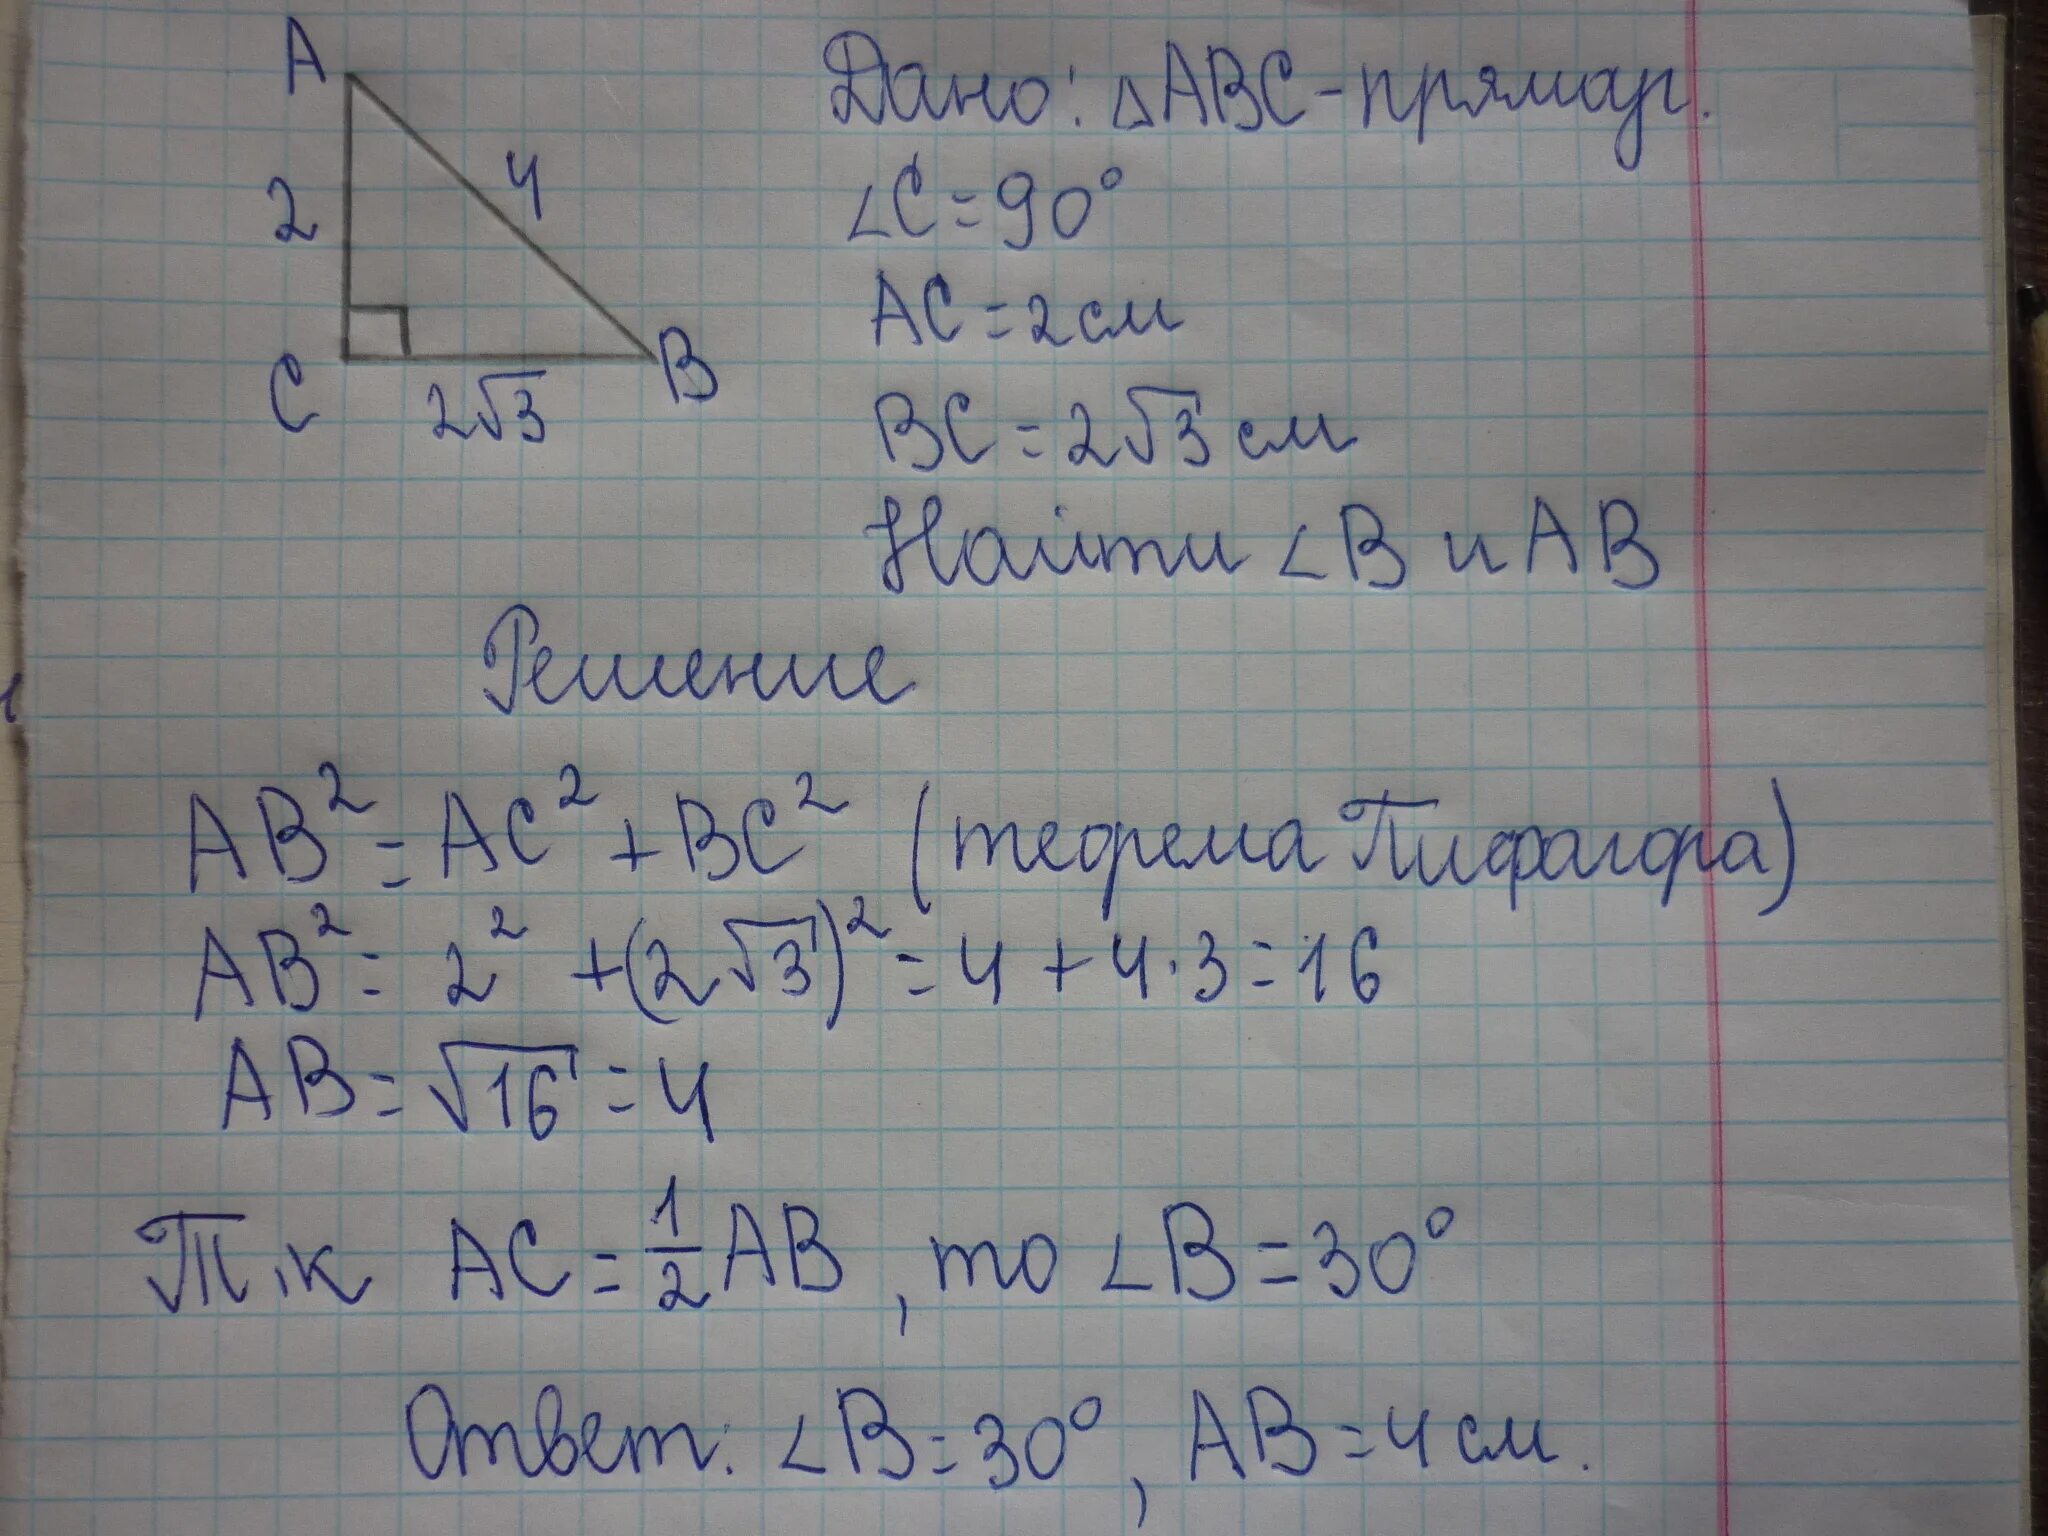 Ы треугольнике авс угол с равен 90. Треугольник АВС угол с 90 градусов АС. Треугольник АВС угол с 90 градусов АС вс. Прямоугольный треугольник АВС угол с 90 градусов. Треугольник АВС угол с 90.